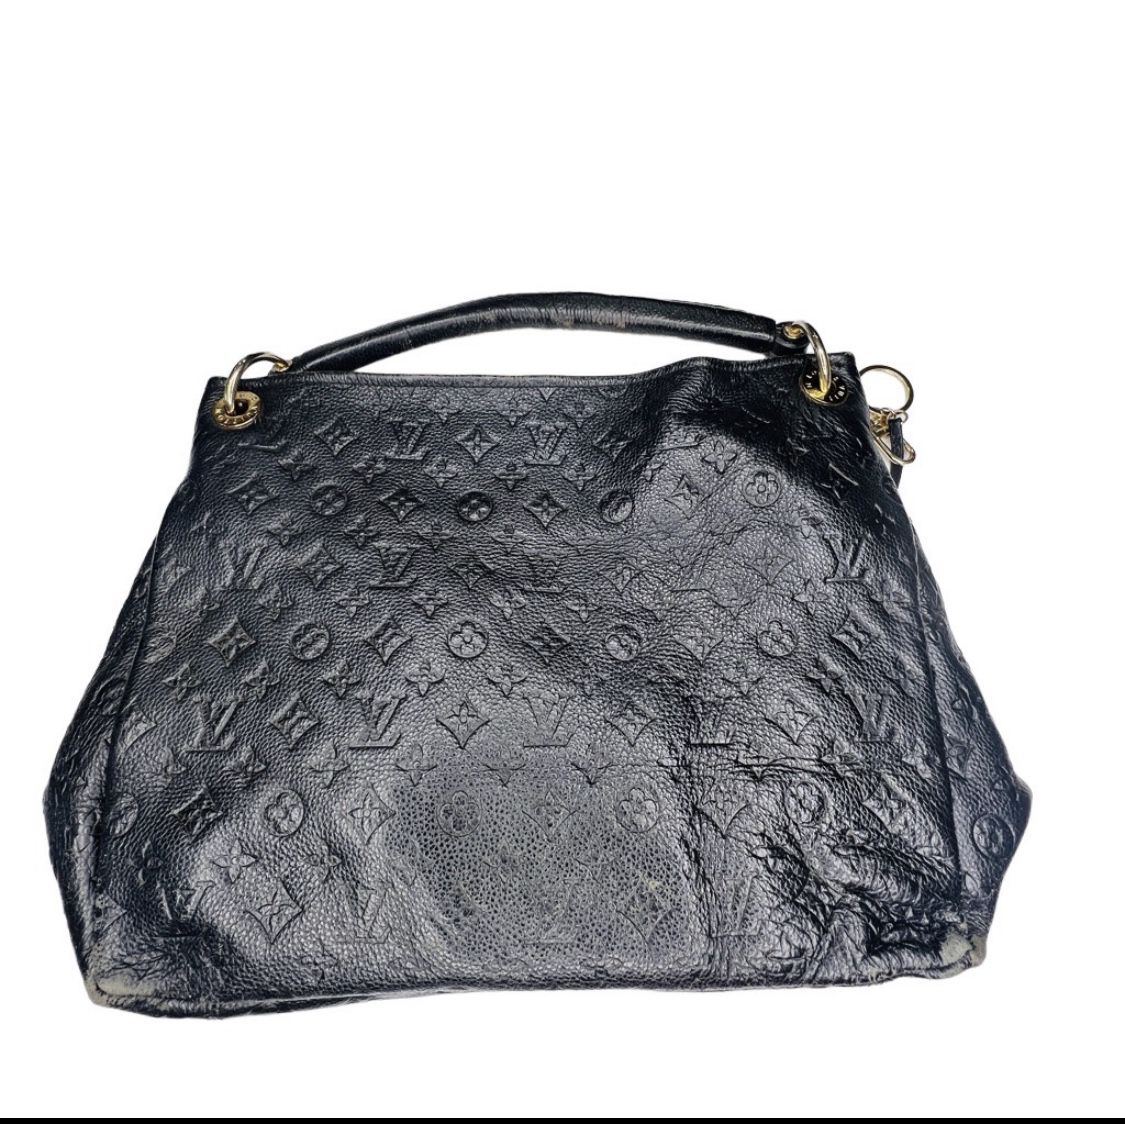 Authentic VINTAGE Louis Vuitton Black Empriente Montaigne GM Handbag  Satchel for Sale in Scottsdale, AZ - OfferUp